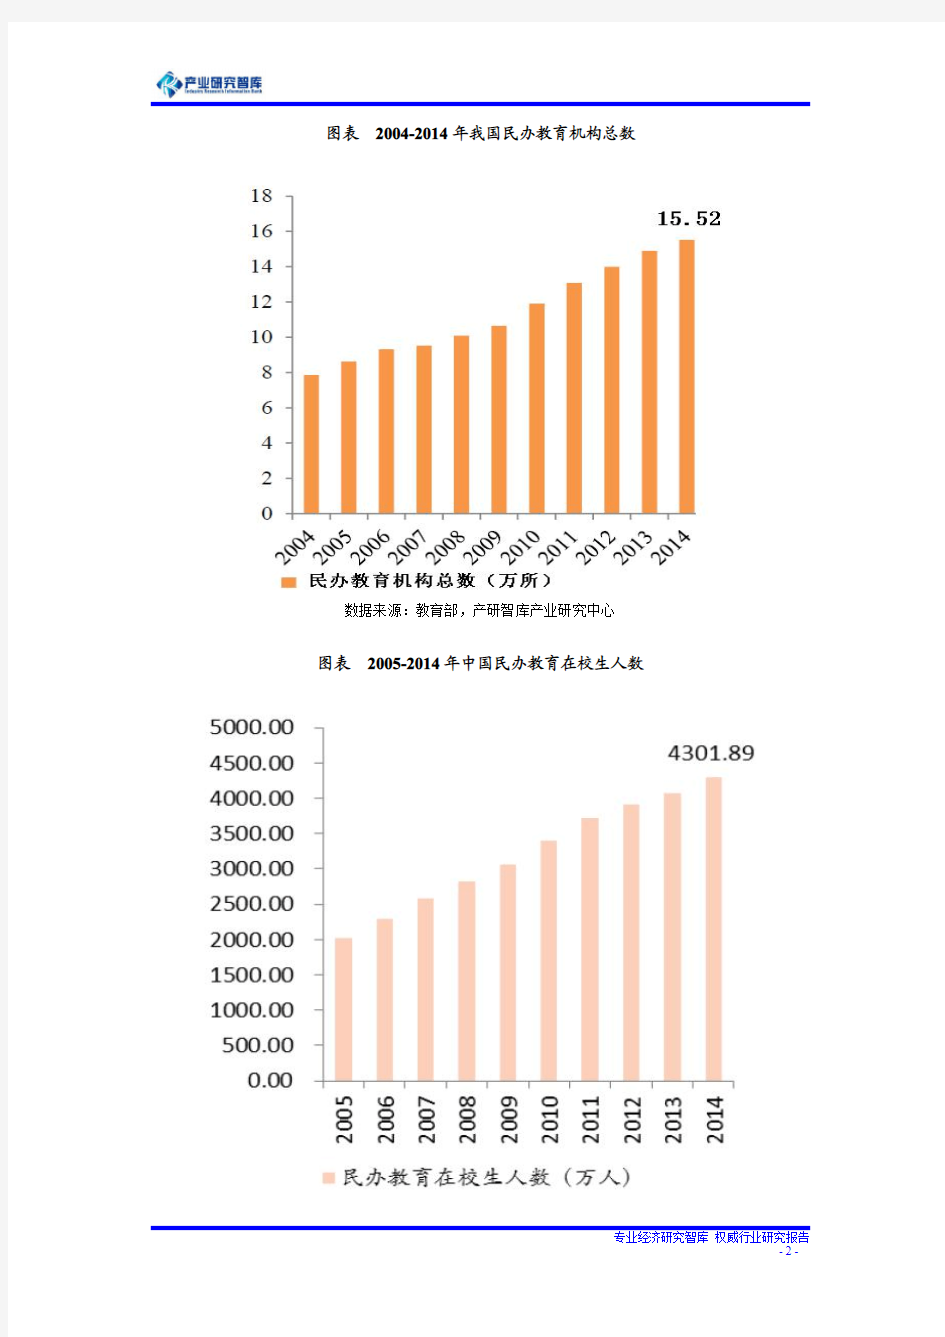 2016-2020年中国民办教育市场规模预测分析